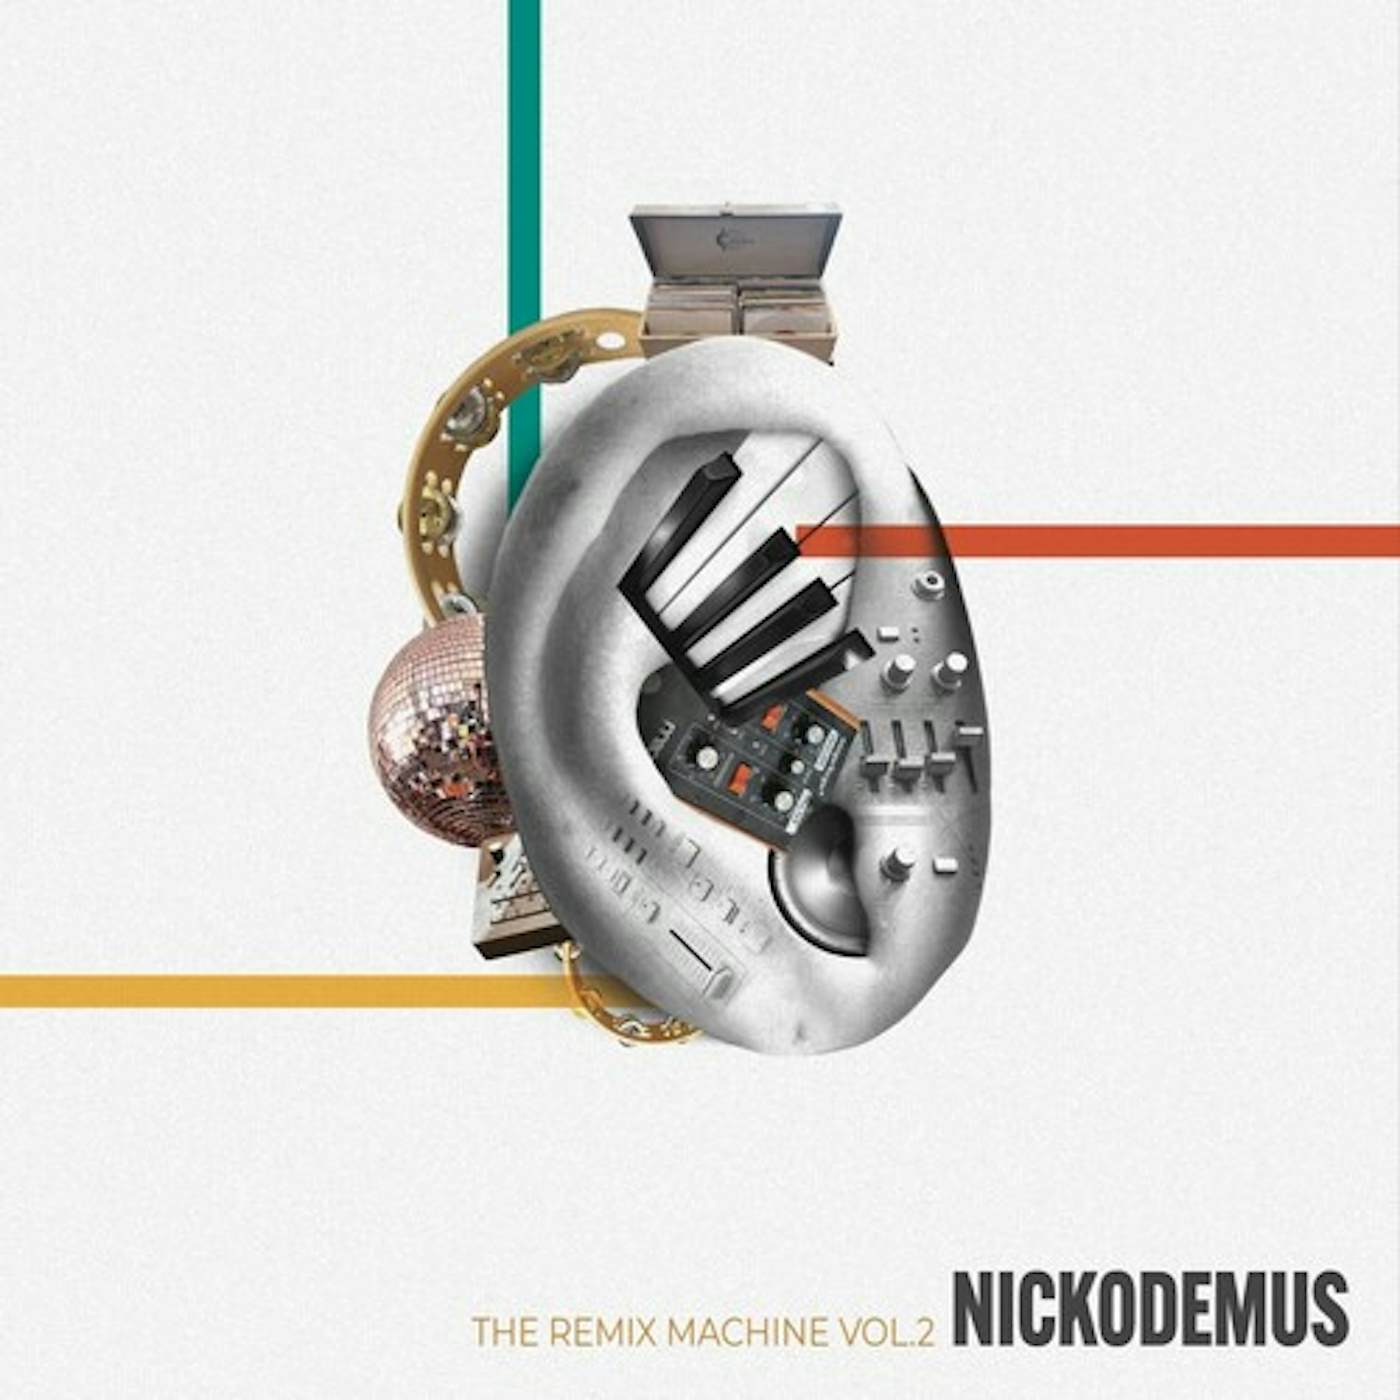 Nickodemus REMIX MACHINE VOL. 2 Vinyl Record